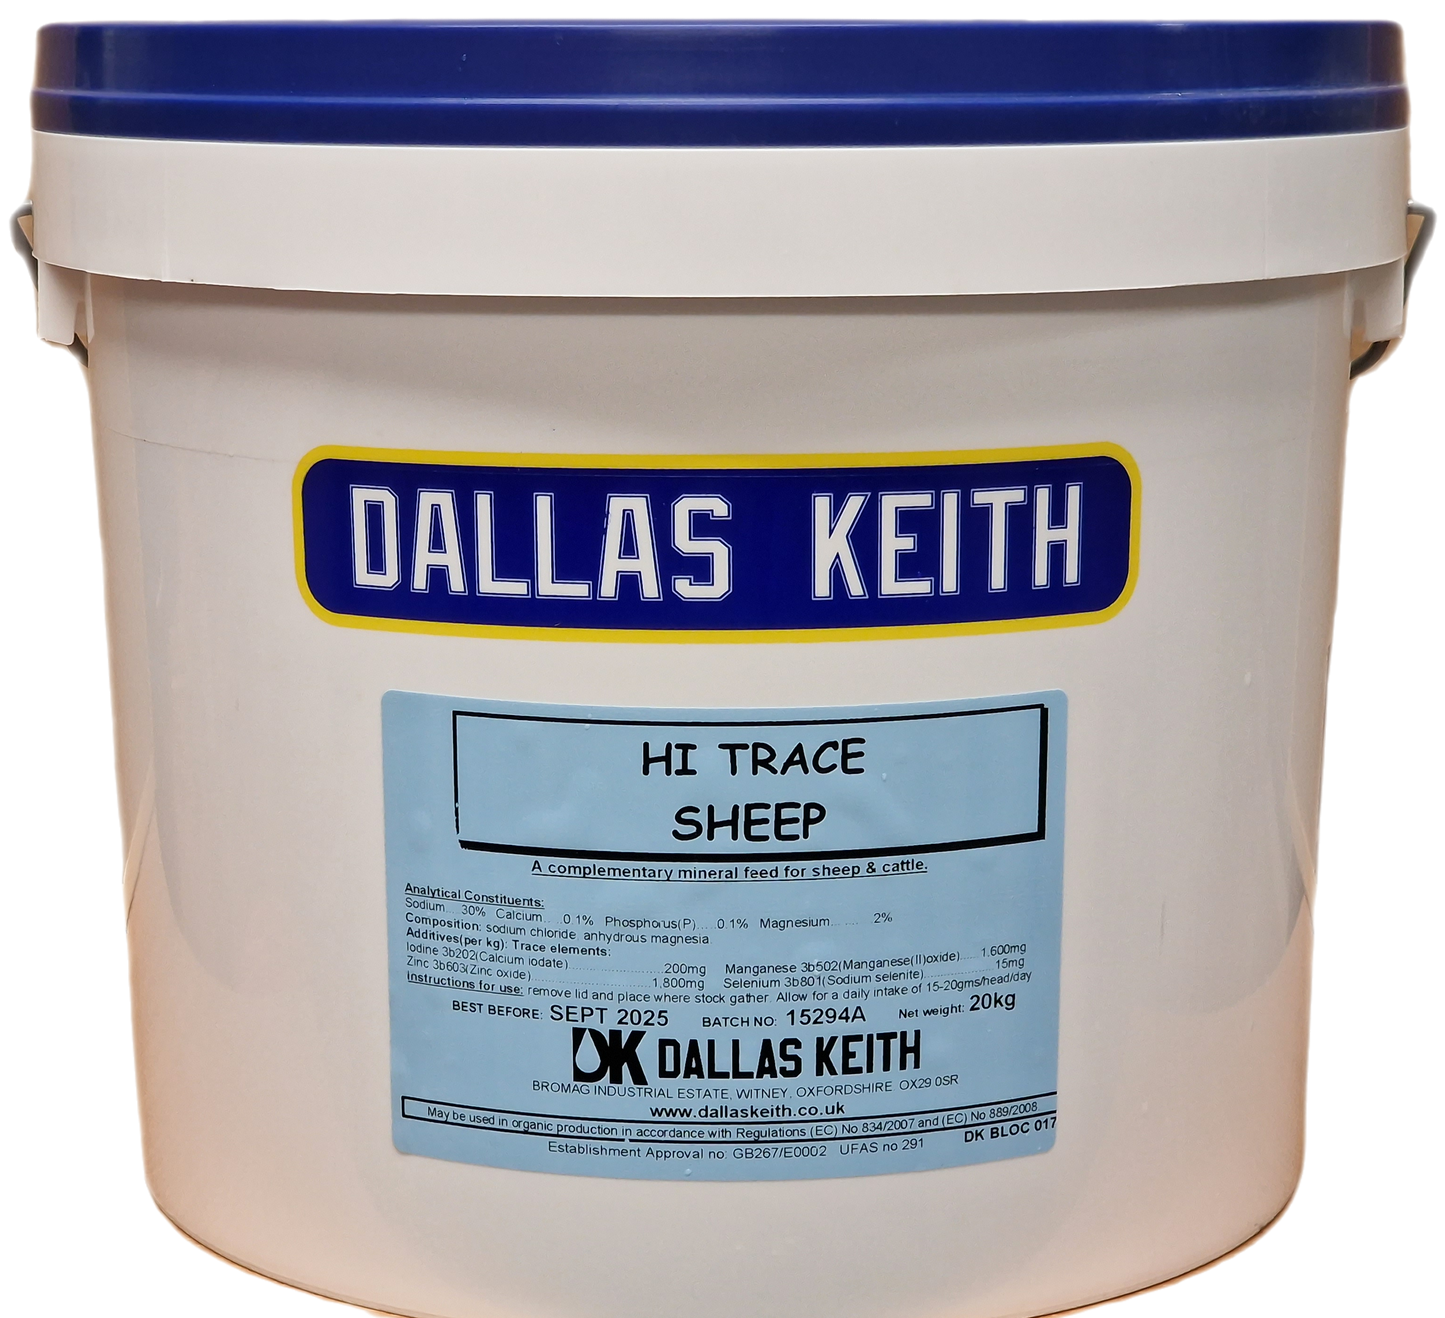 Dallas Keith SaltLix Hi Trace Sheep Bucket 20Kg